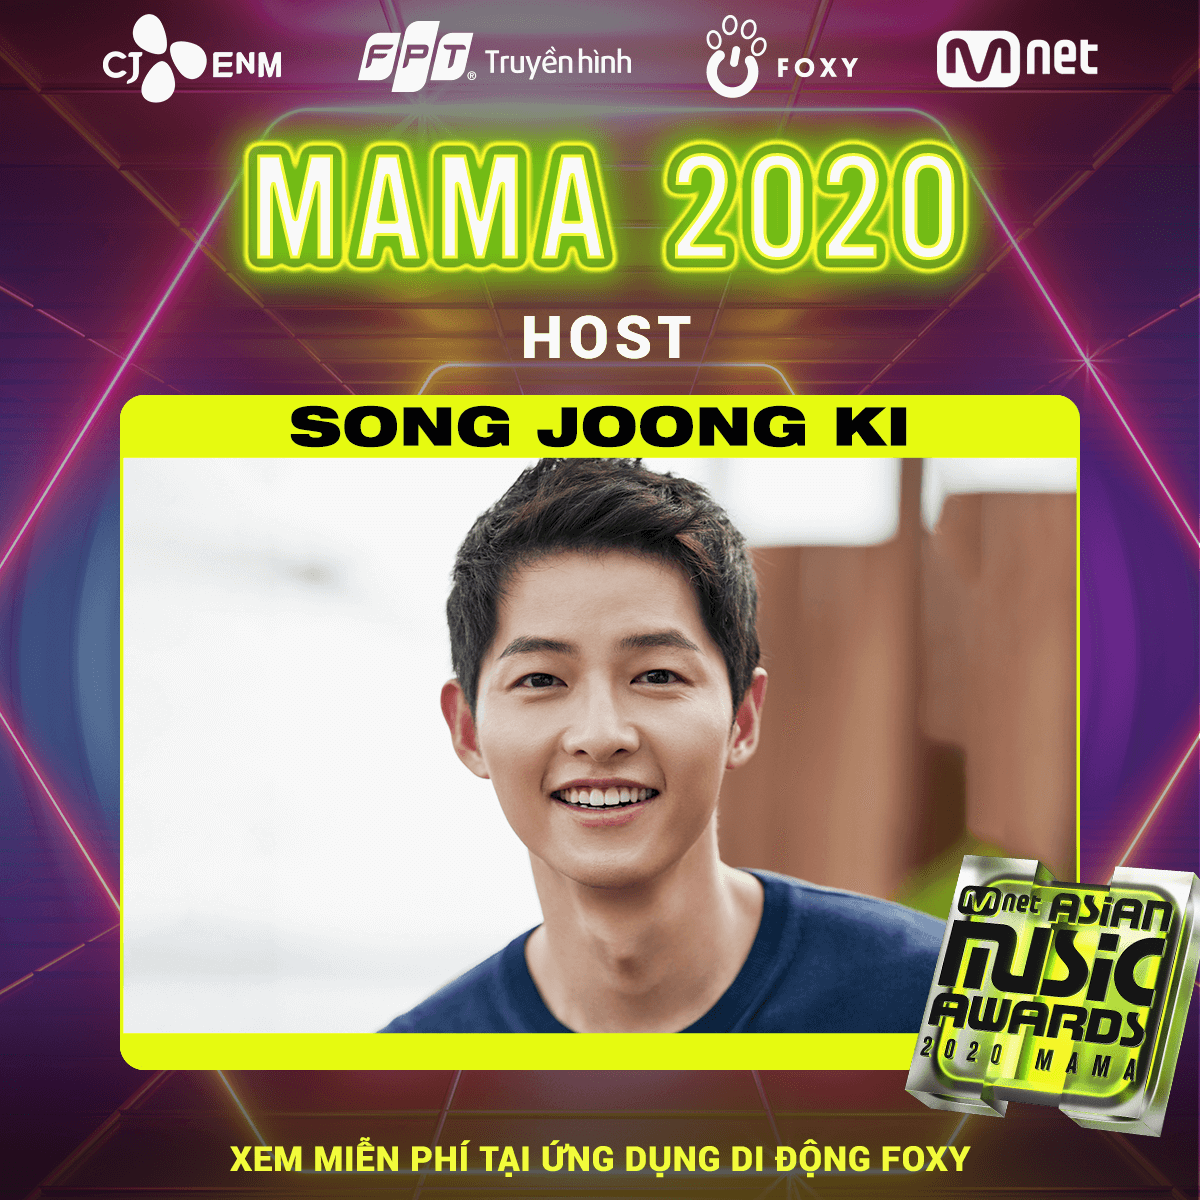 Song Joong Ki là người dẫn chương trình MAMA 2020